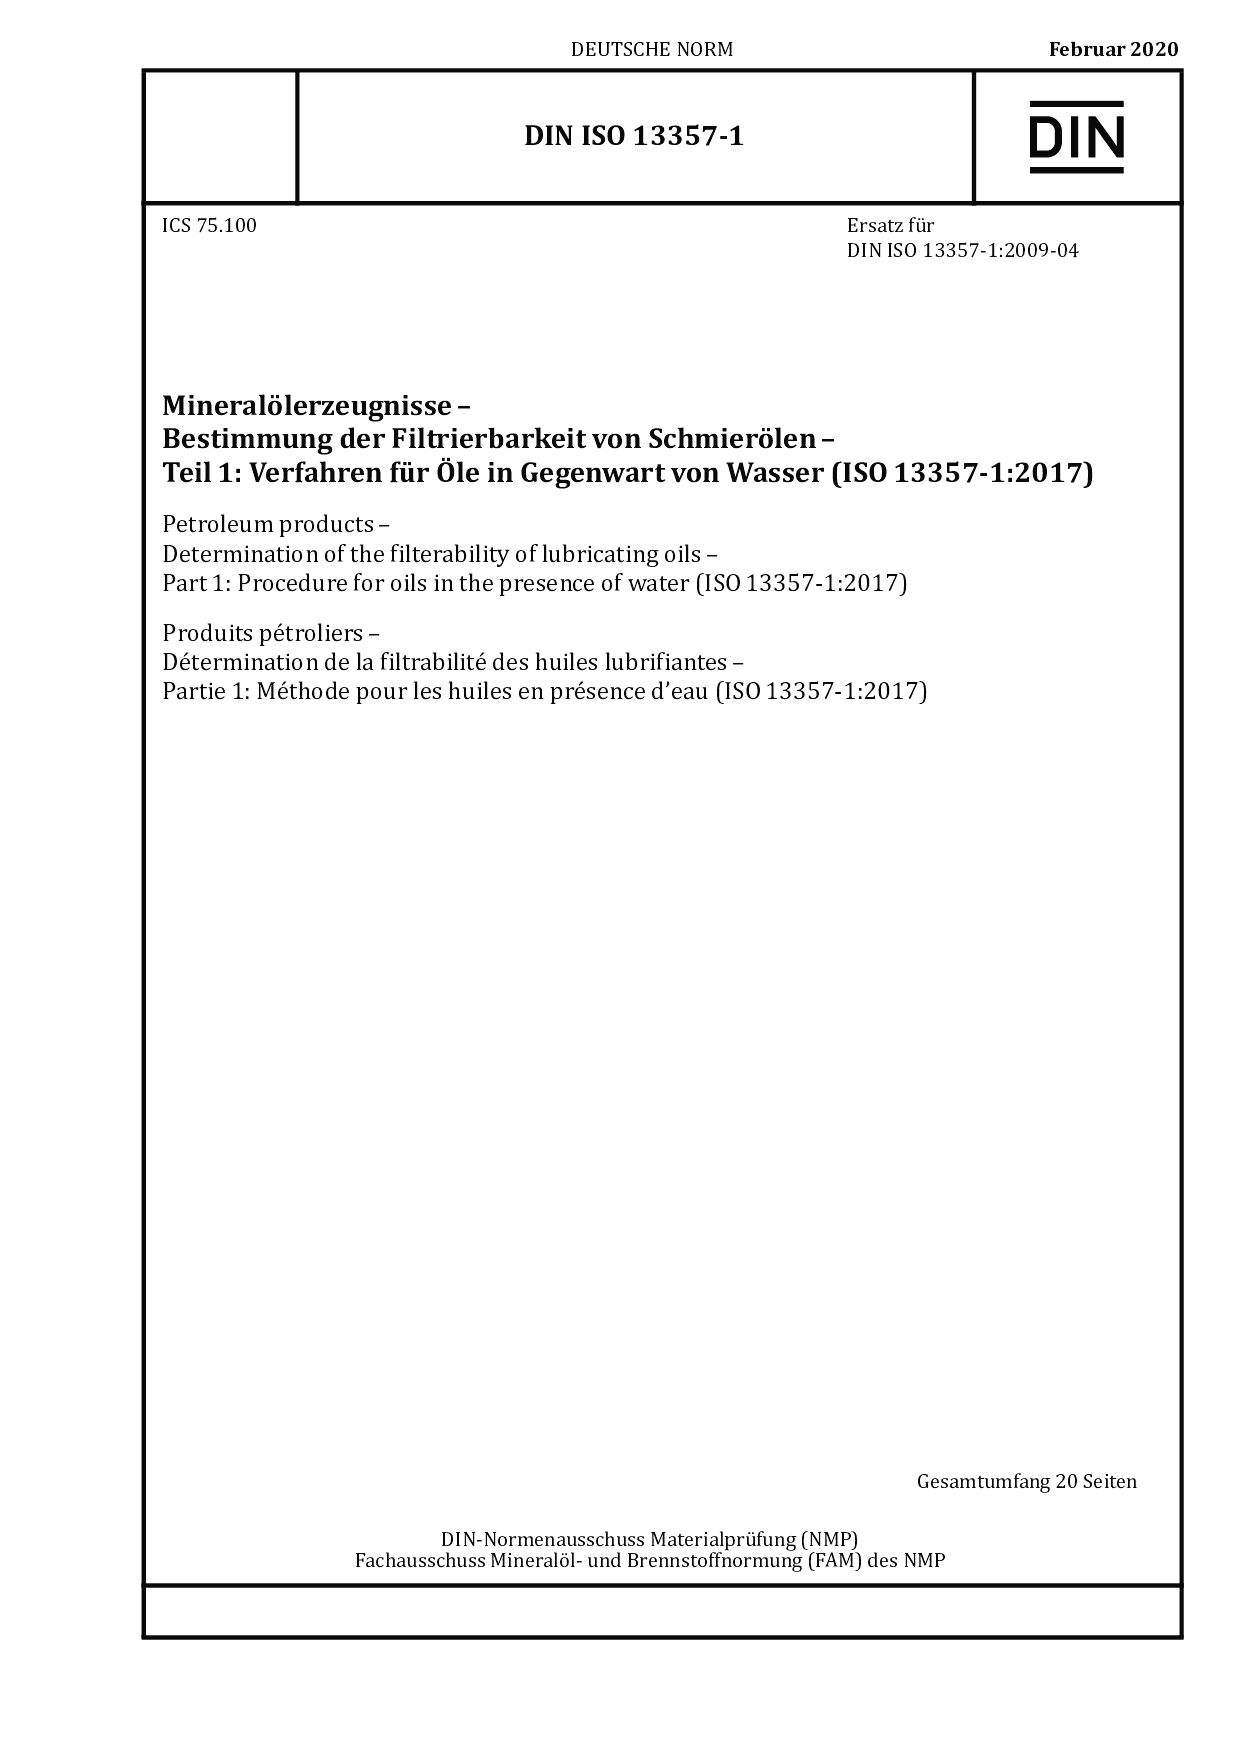 DIN ISO 13357-1:2020封面图